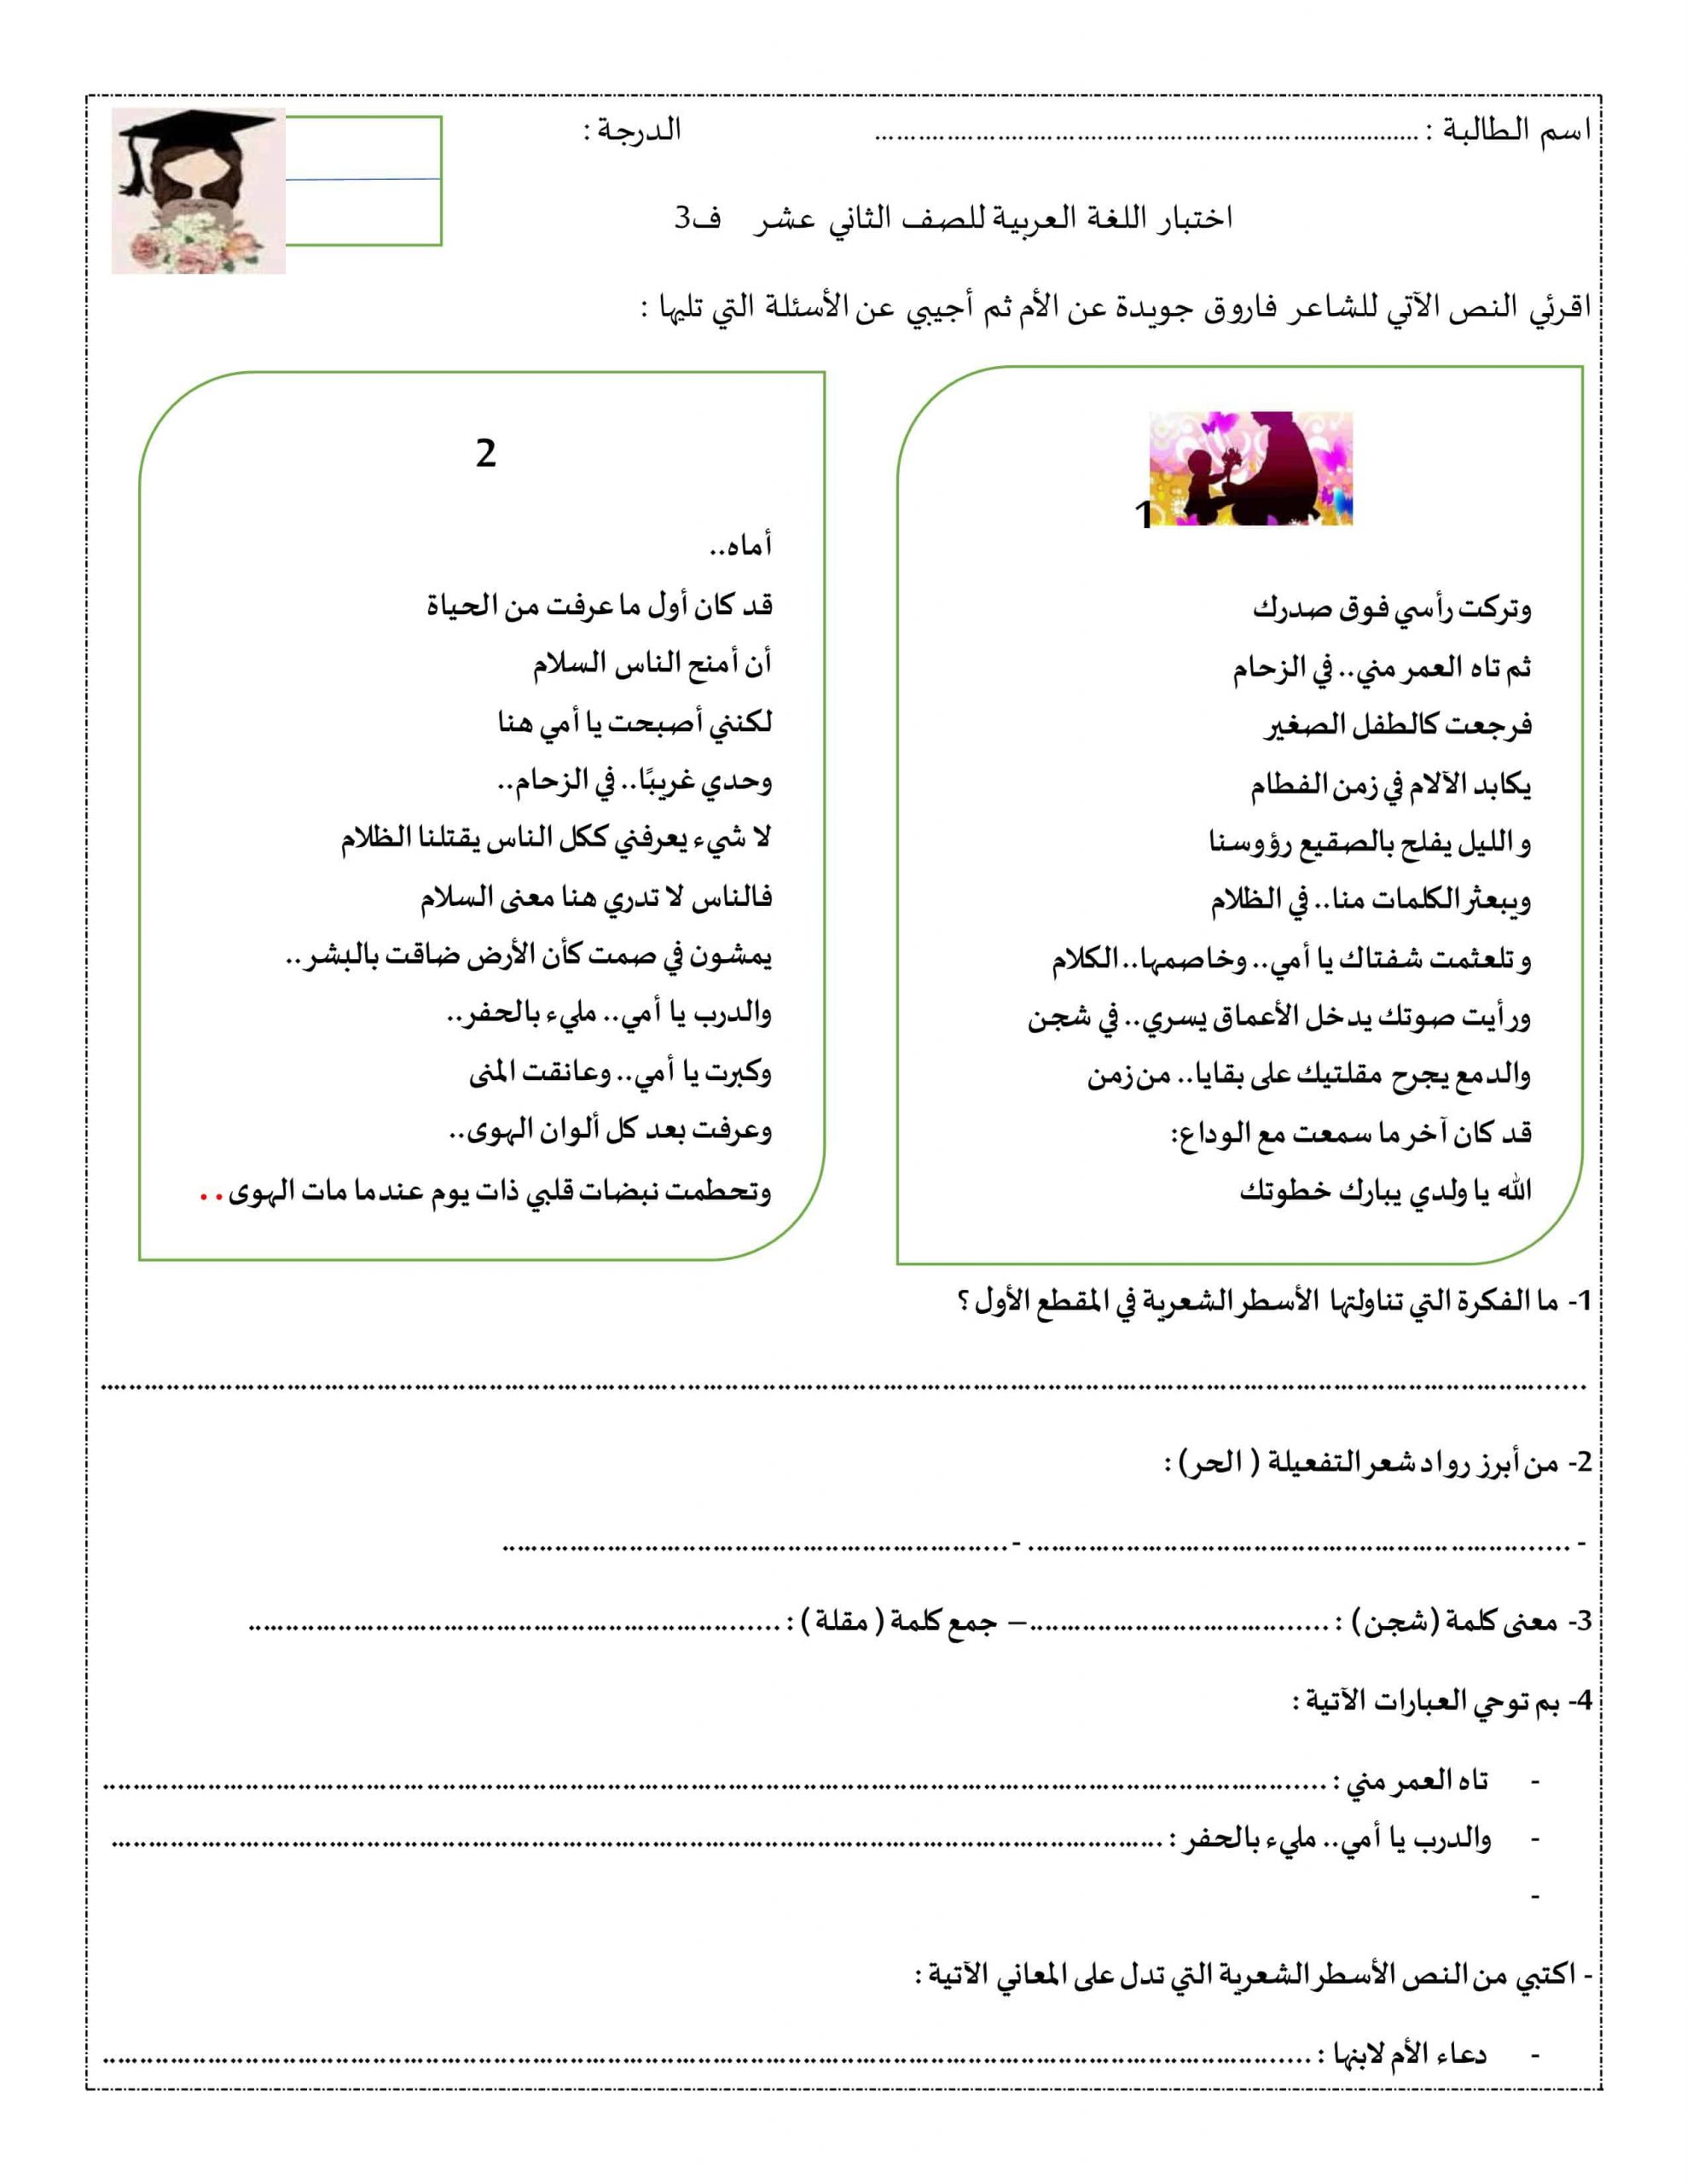 ورقة عمل مراجعة عامة الصف الثاني عشر مادة اللغة العربية 